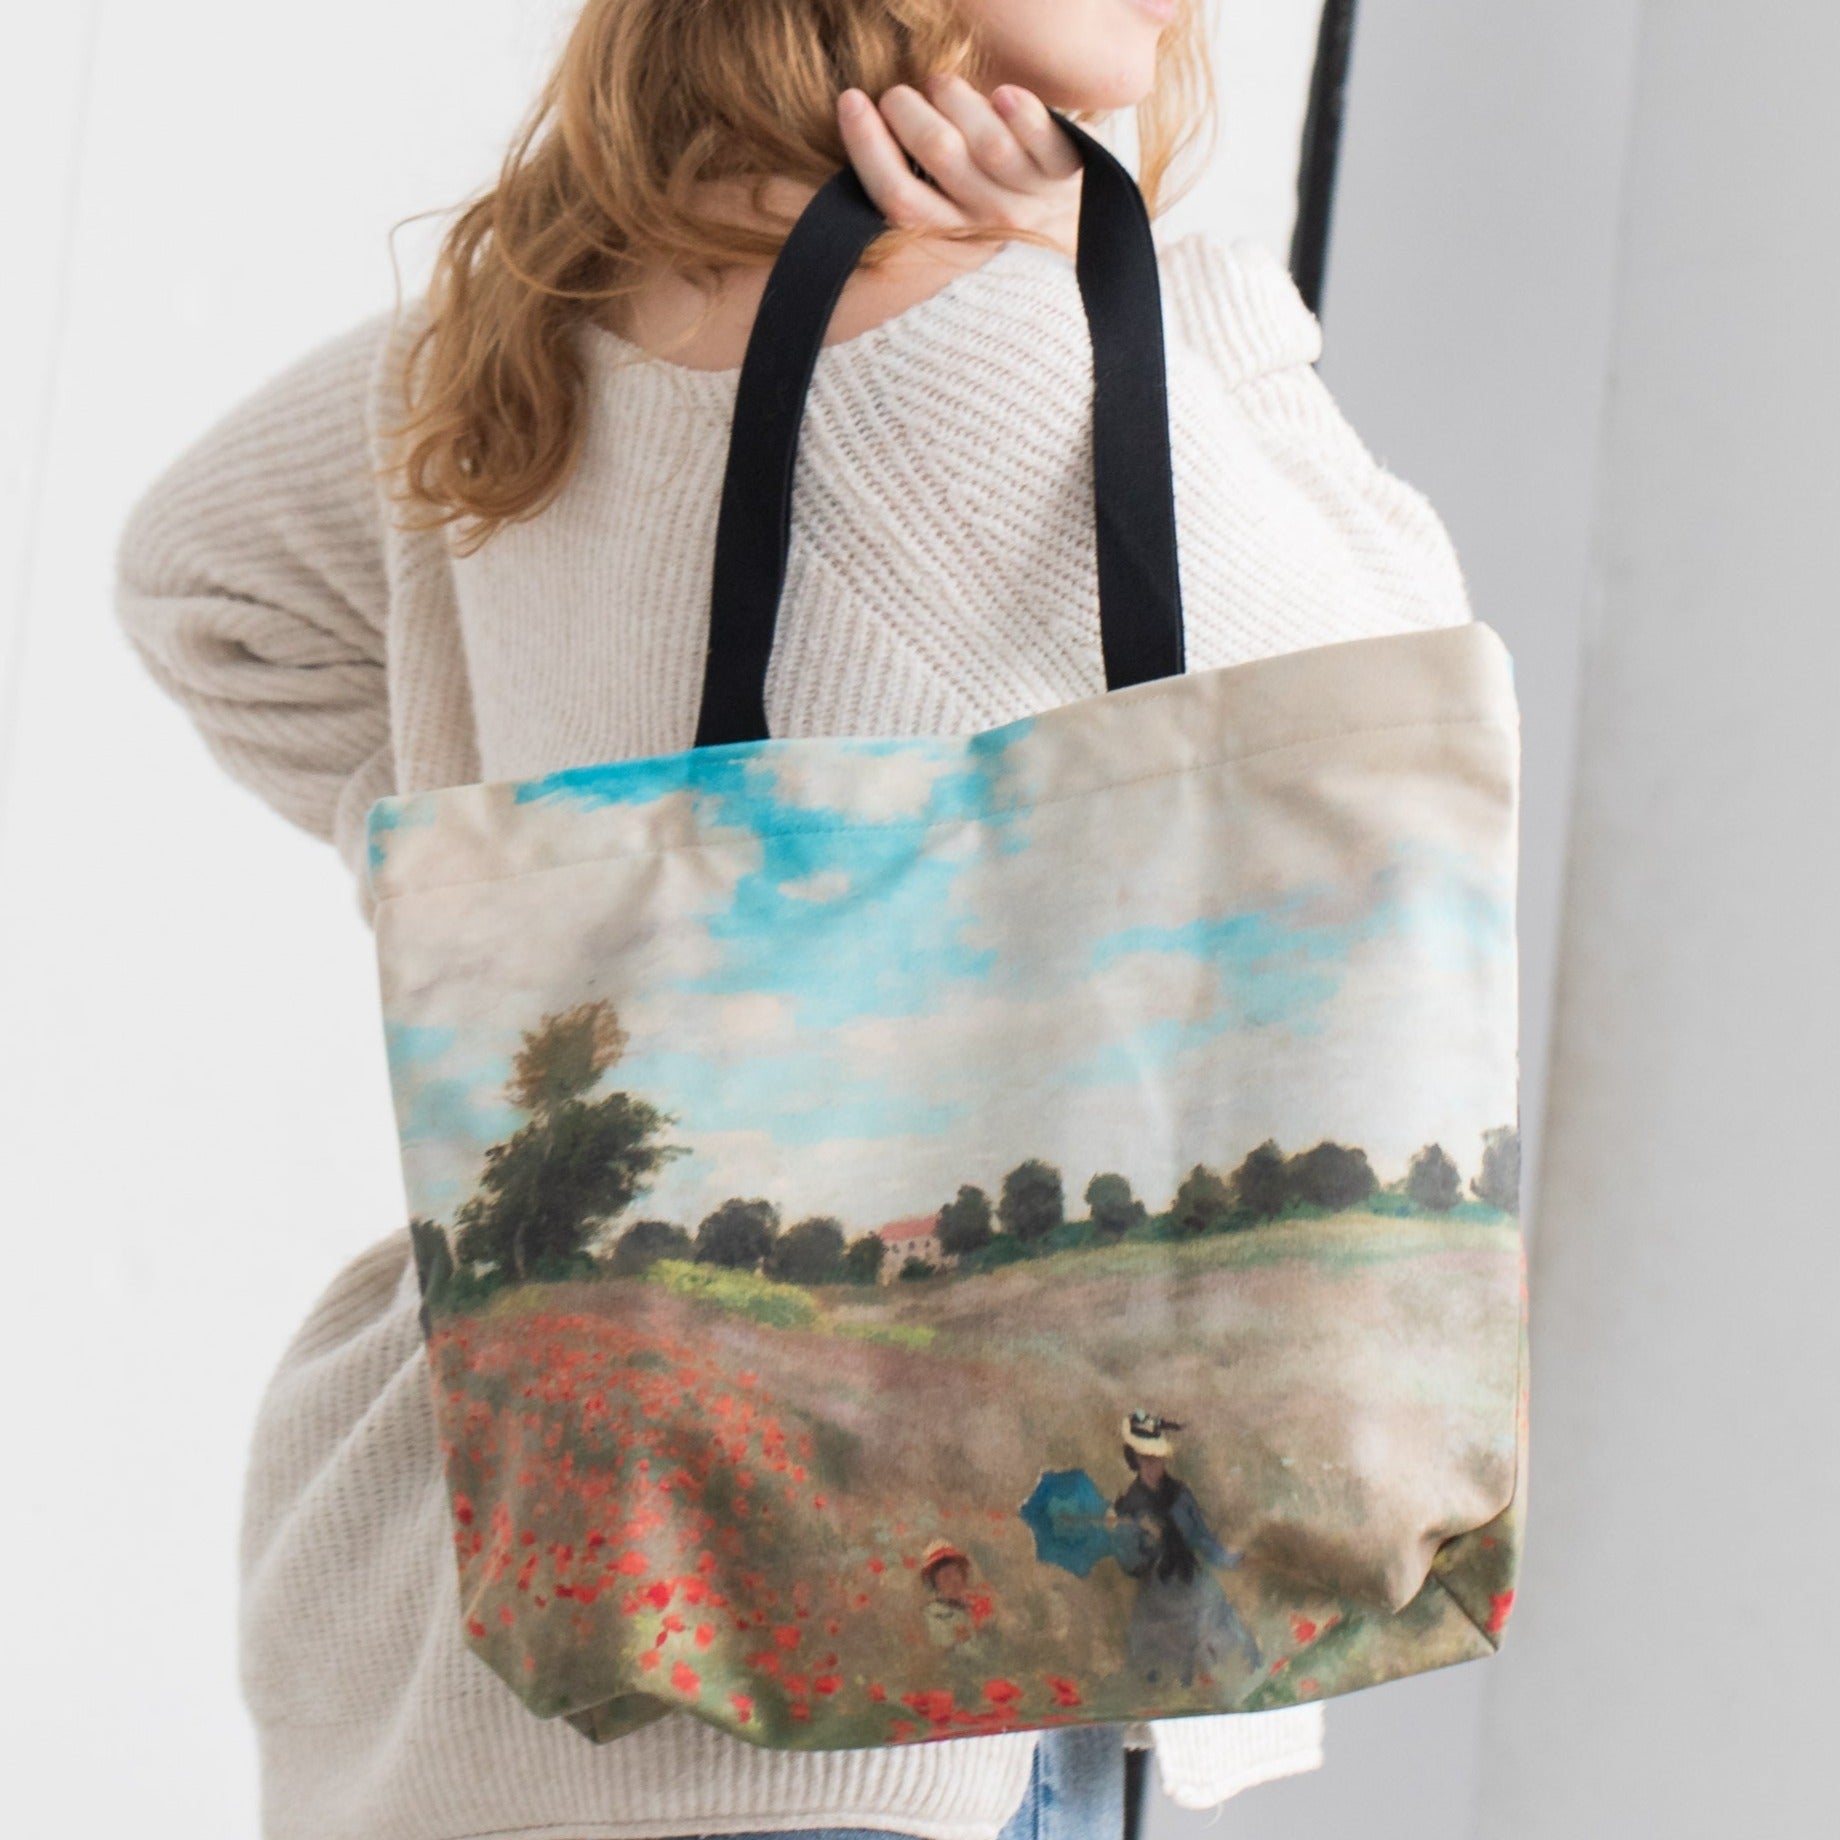 Pirkinių krepšys Claude Monet "Poppies"